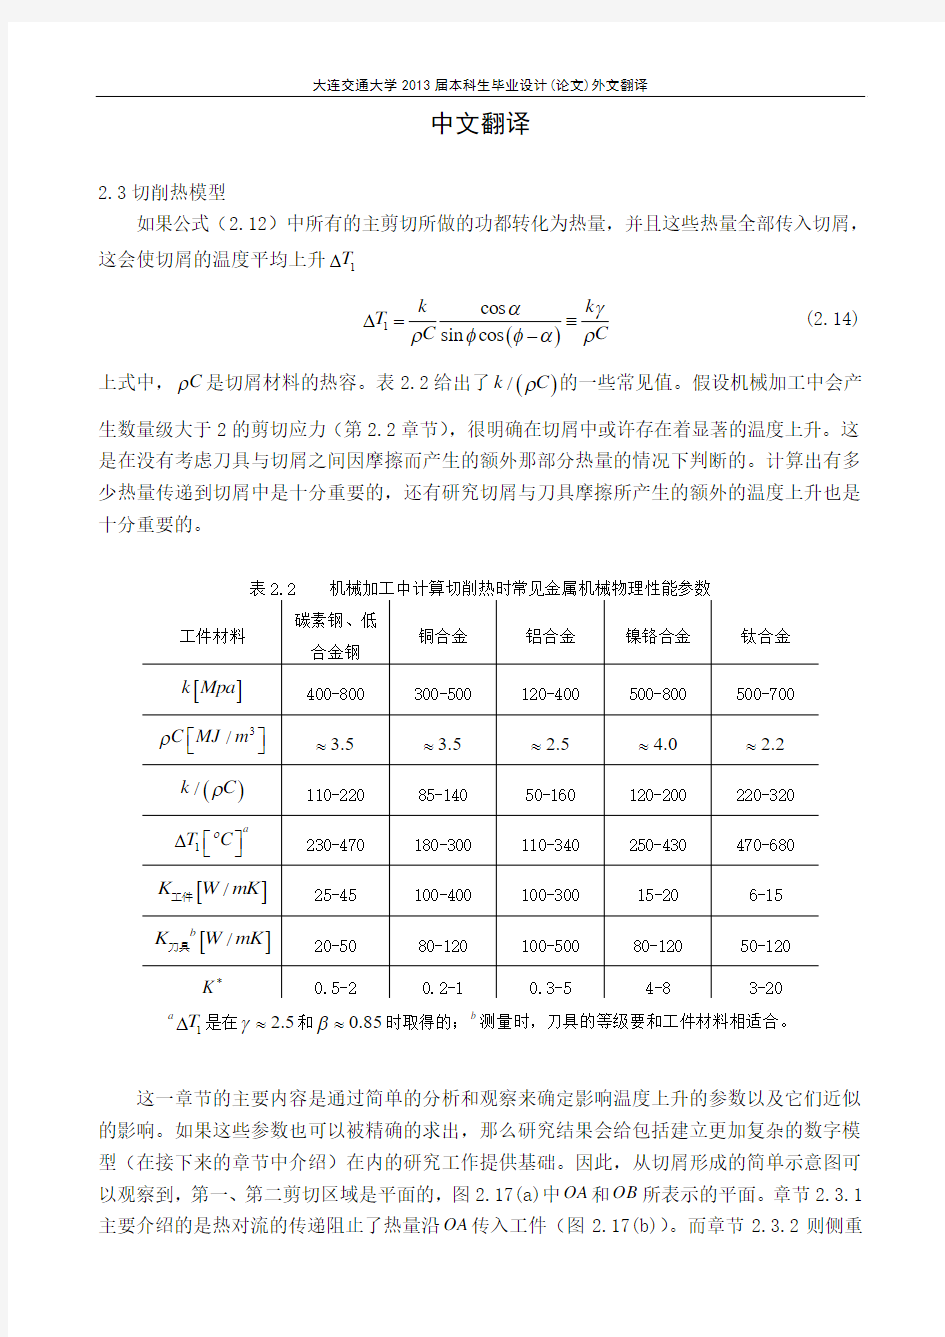 本科机械工程专业毕业设计外文翻译(中文部分)